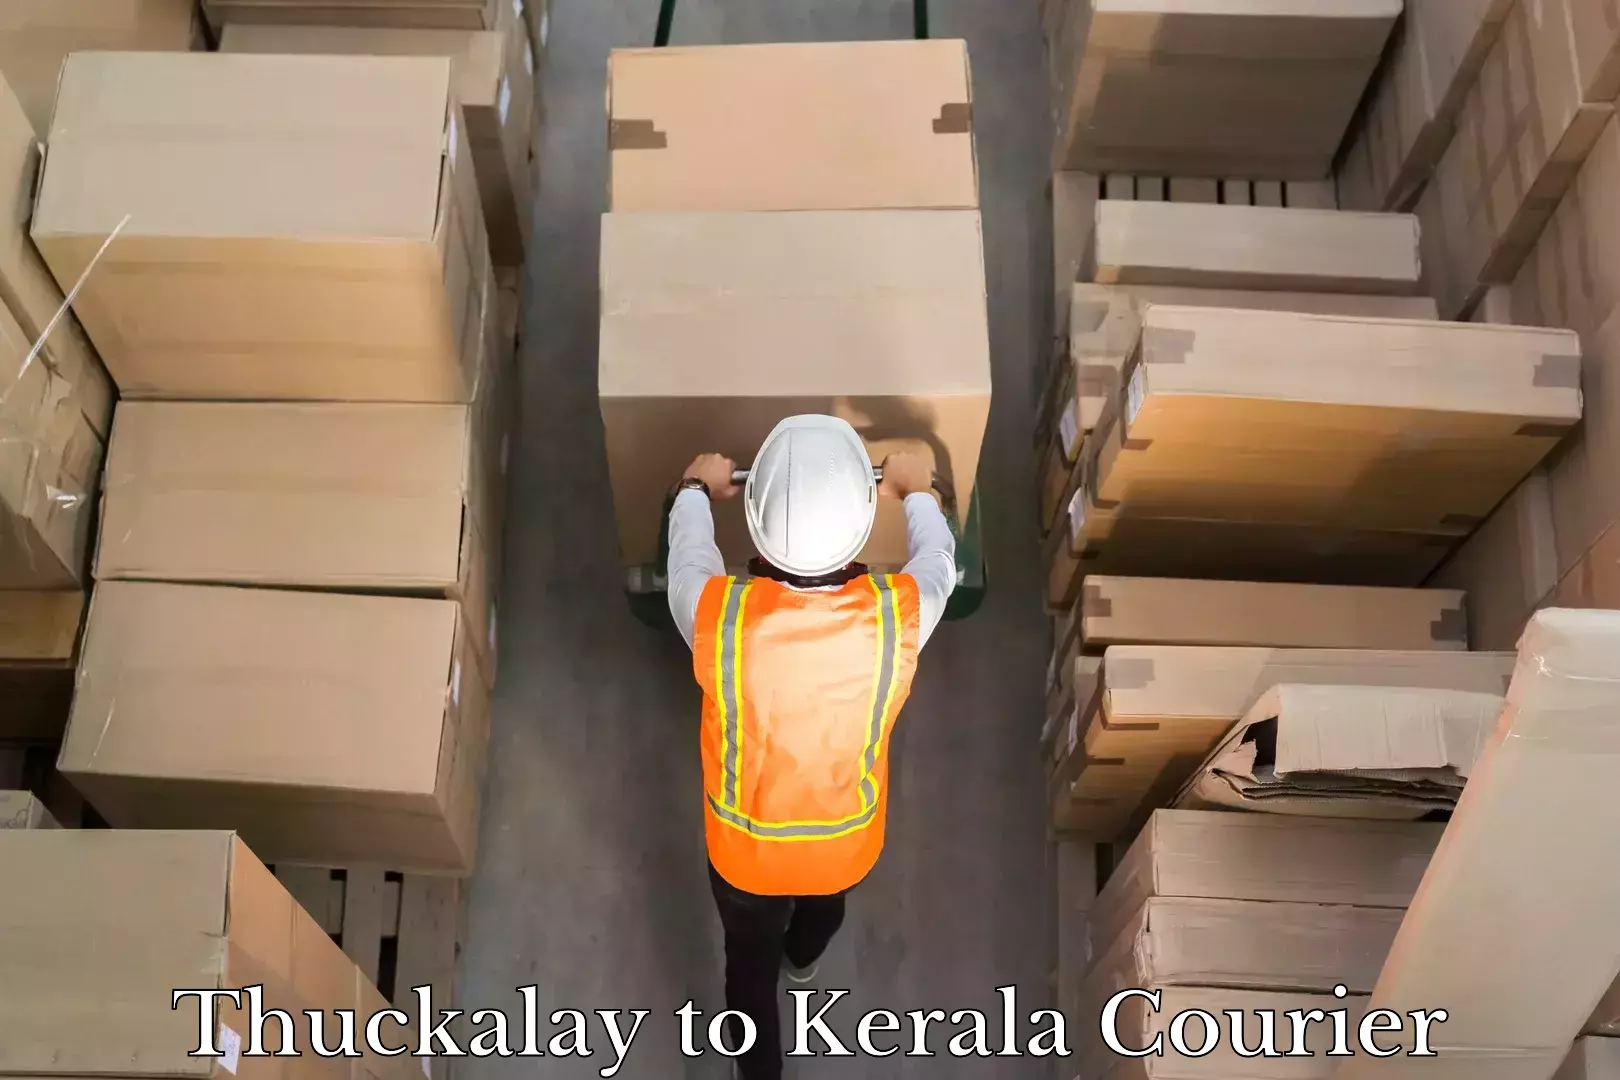 Advanced courier platforms Thuckalay to Kerala